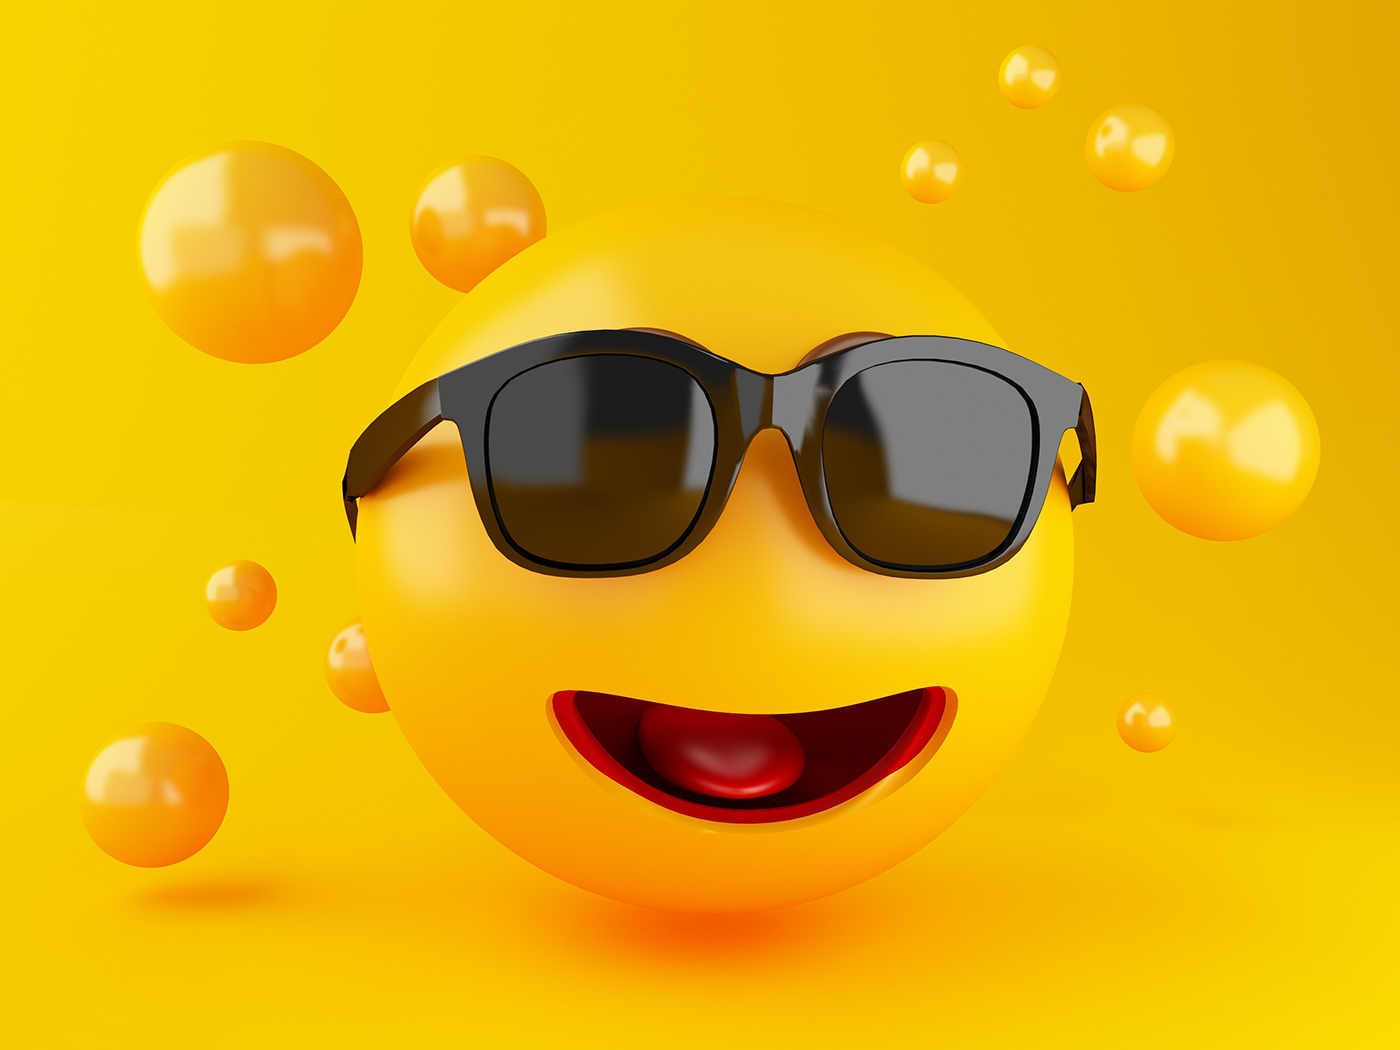 3D Emoji social media icons Render ILLUSTRATION  Emoticon Character